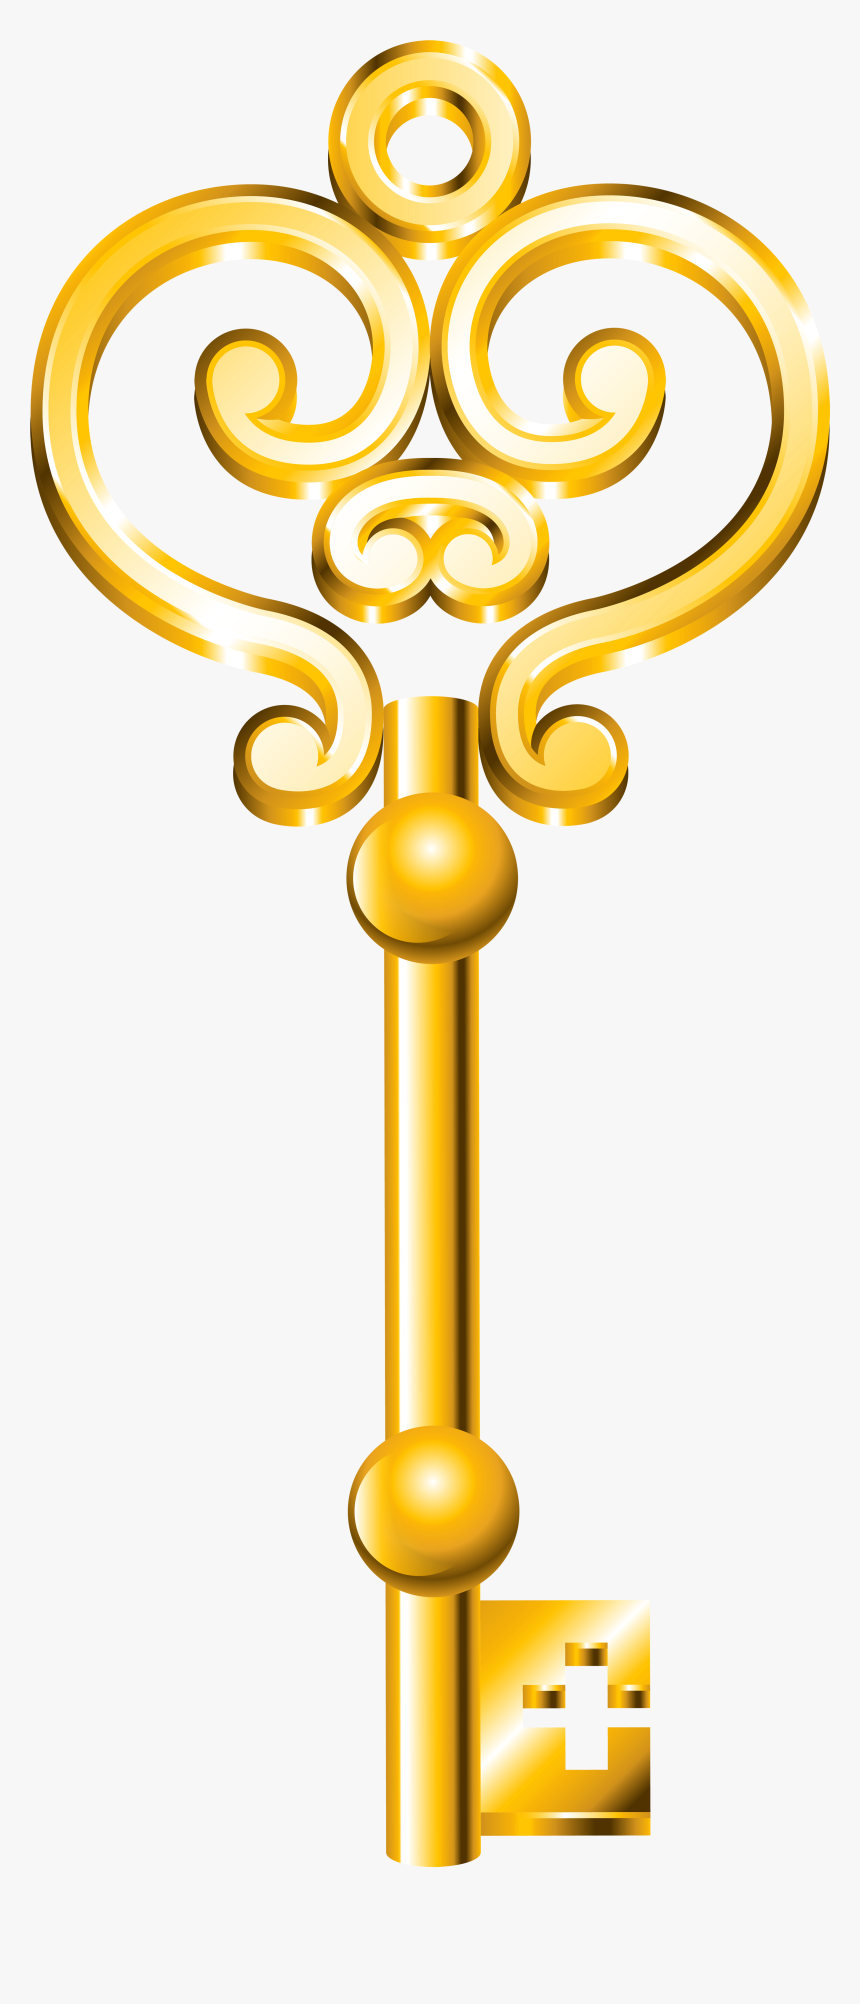 Clipart chìa khóa vàng: Bạn đang tìm kiếm hình ảnh clipart chìa khóa vàng để thể hiện ý tưởng của mình? Tại đây, chúng tôi cung cấp những hình ảnh chìa khóa vàng đa dạng và đầy tinh tế. Hãy nhấp để tìm hiểu thêm!